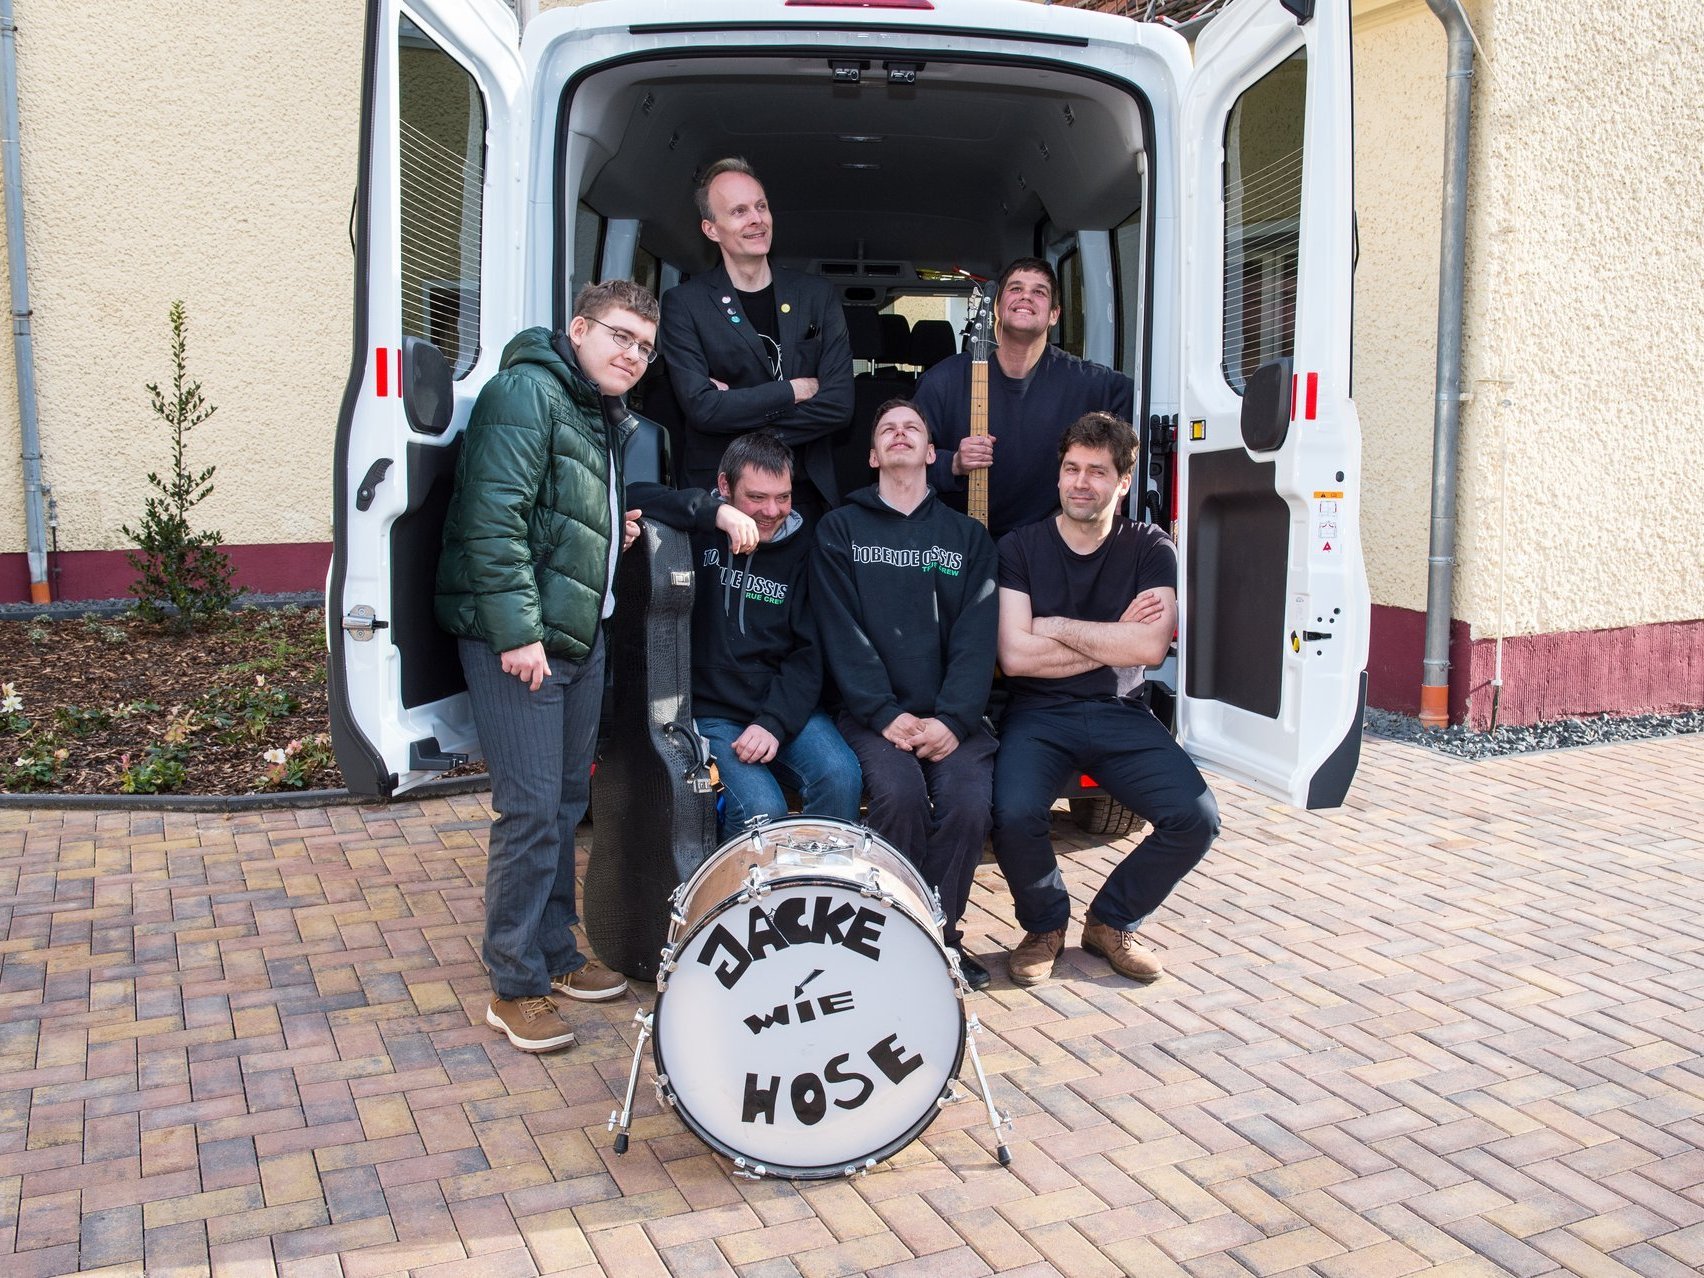 Gruppenbild mit dem "Tour-Van": Die Band "Jacke wie Hose" auf der Ladefläche